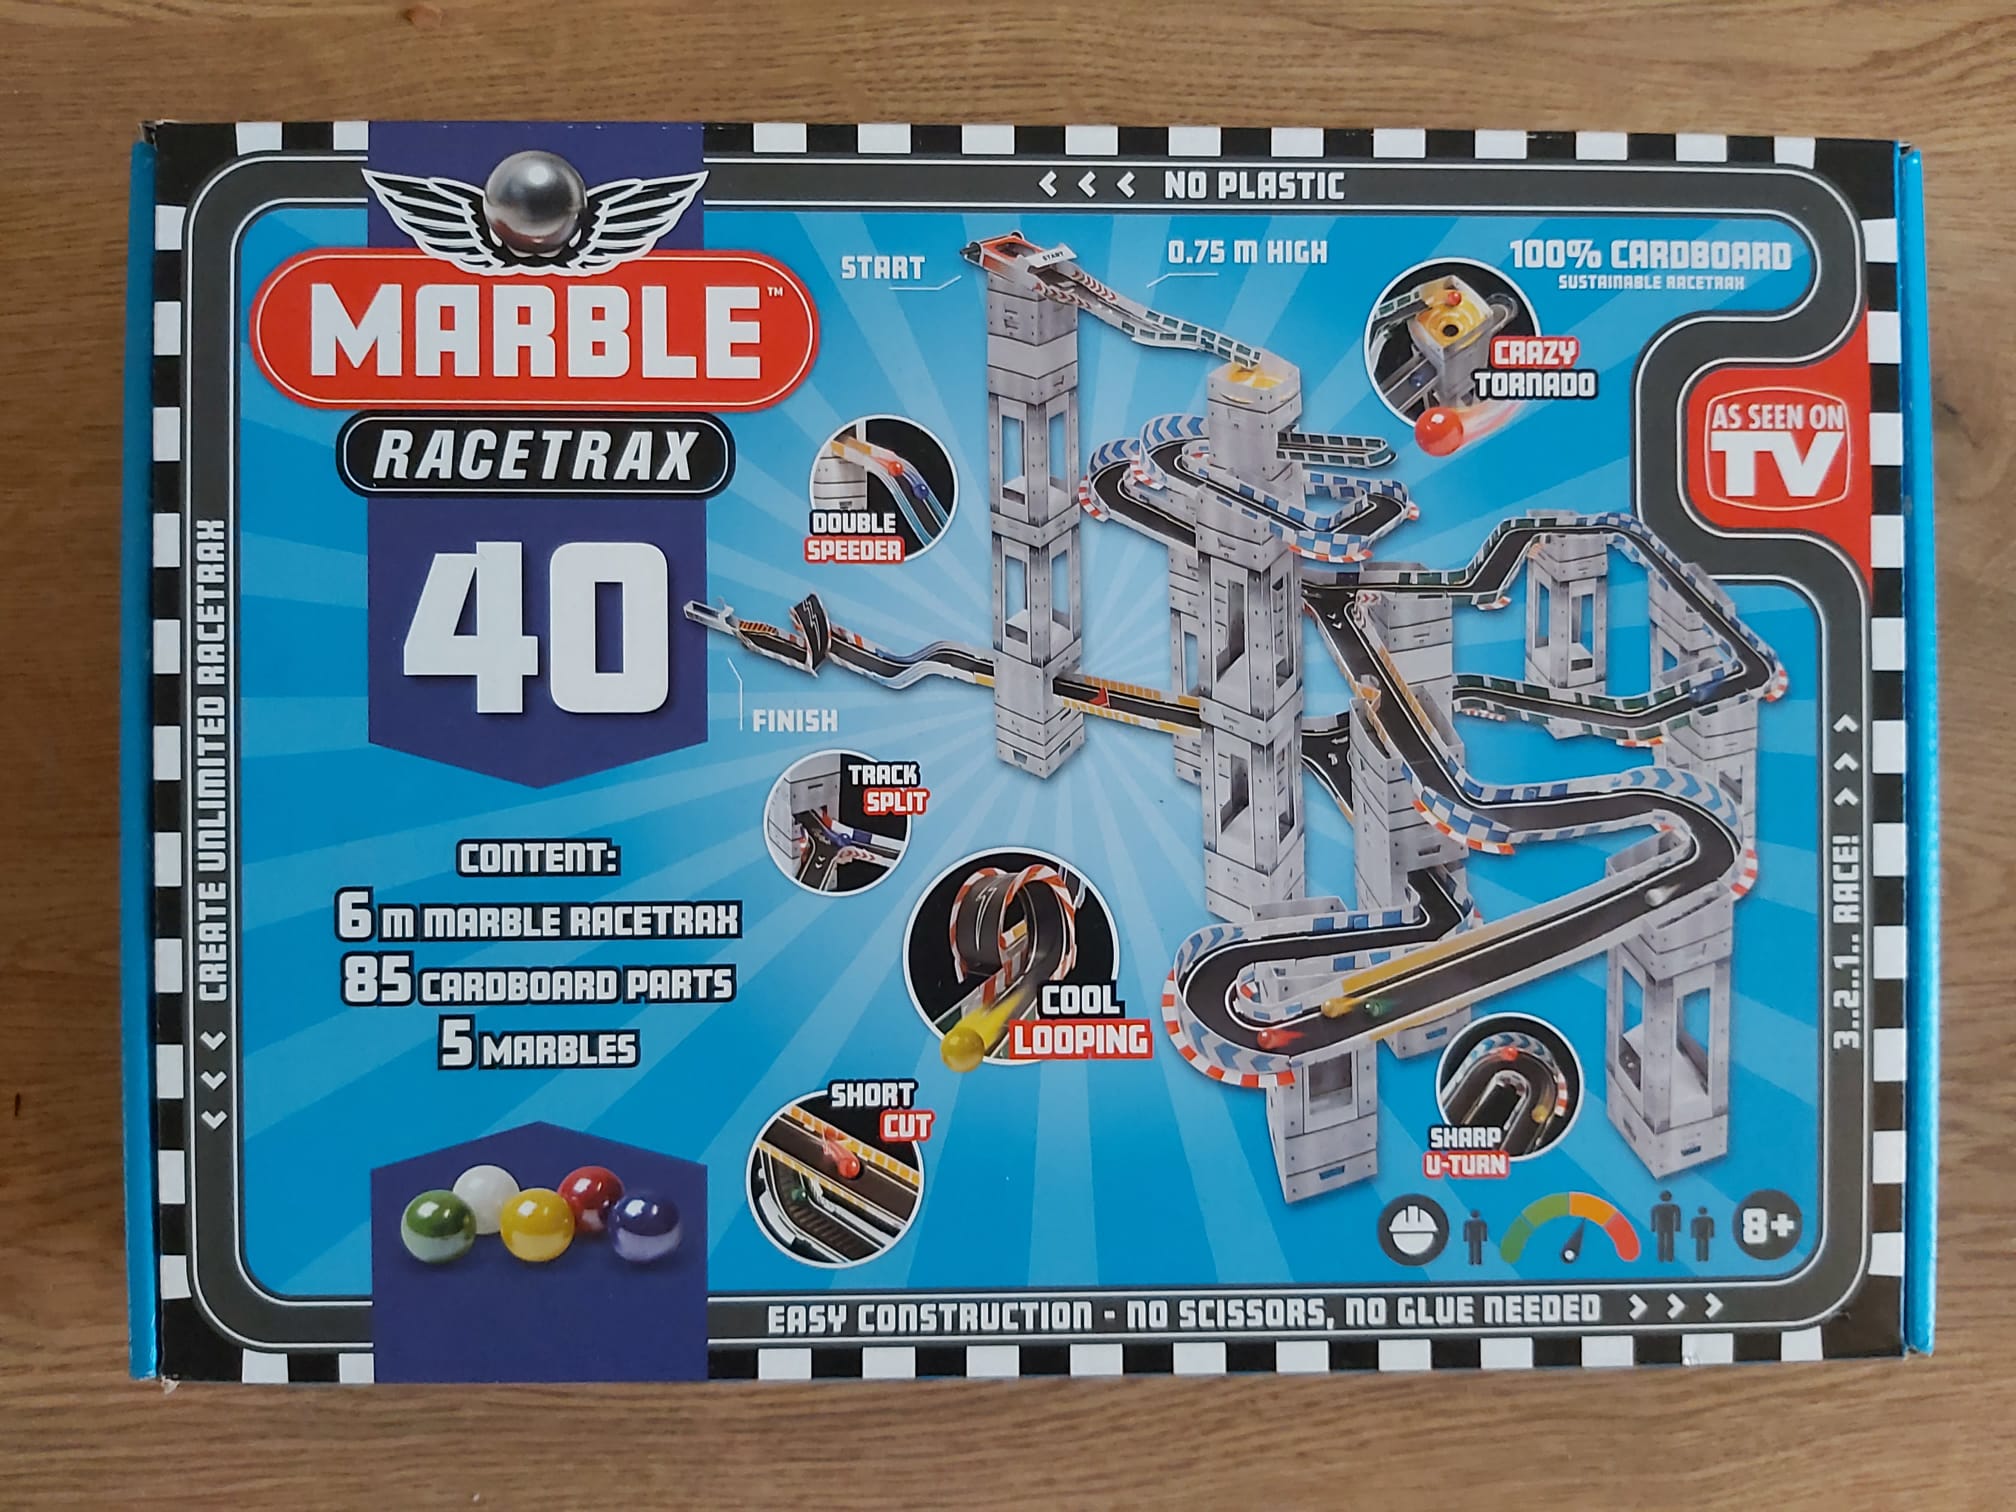 marble racetrax voorkant